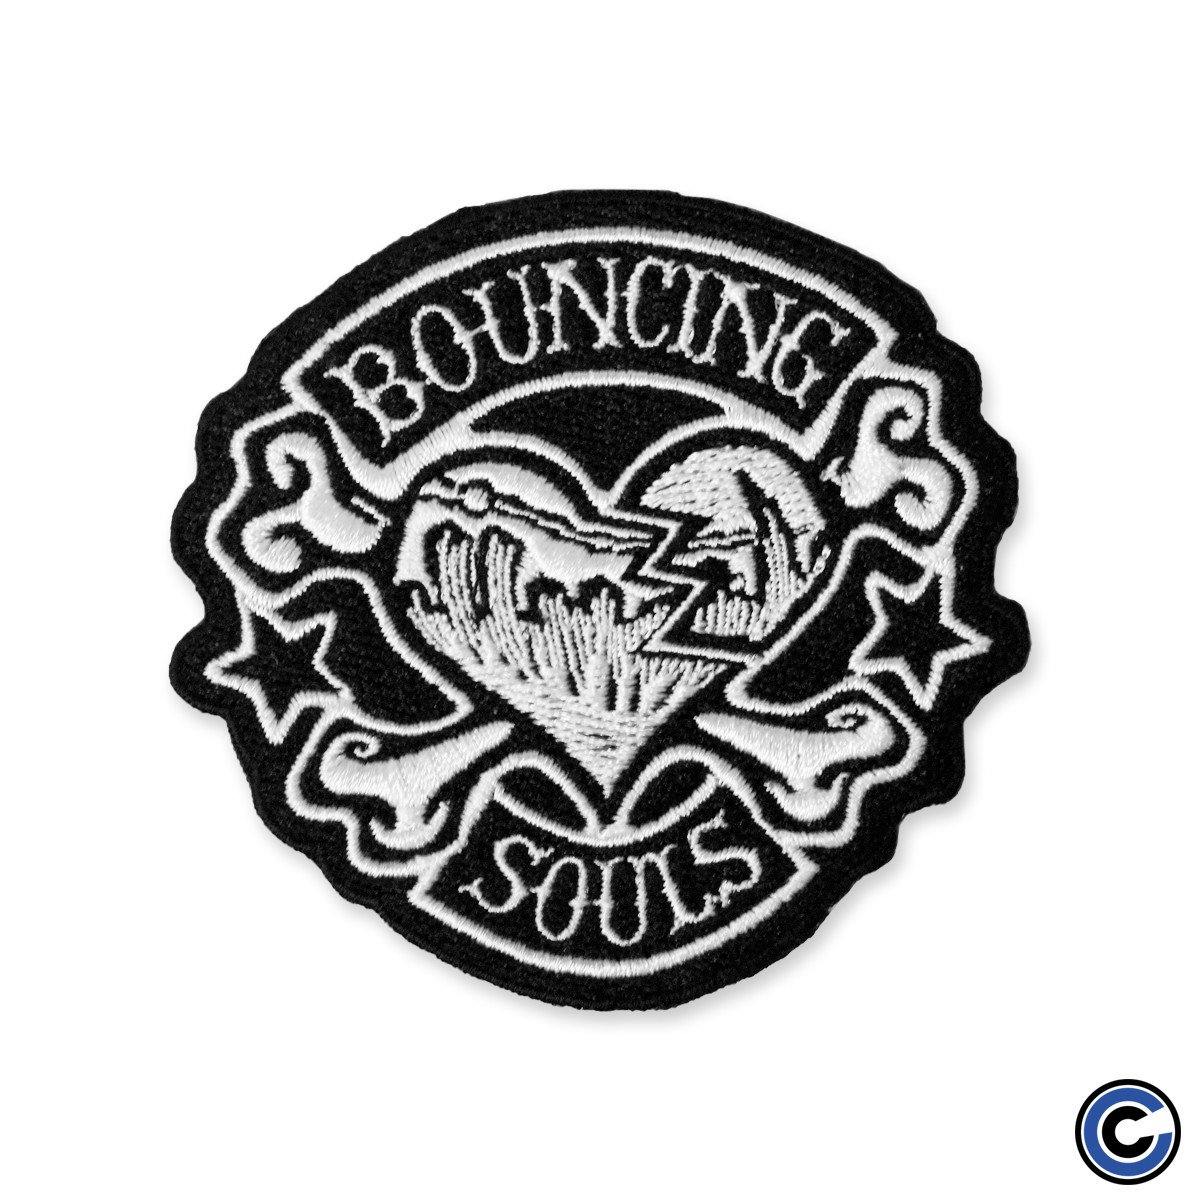 Buy – The Bouncing Souls "Rocker Heart" Patch – Band & Music Merch – Cold Cuts Merch